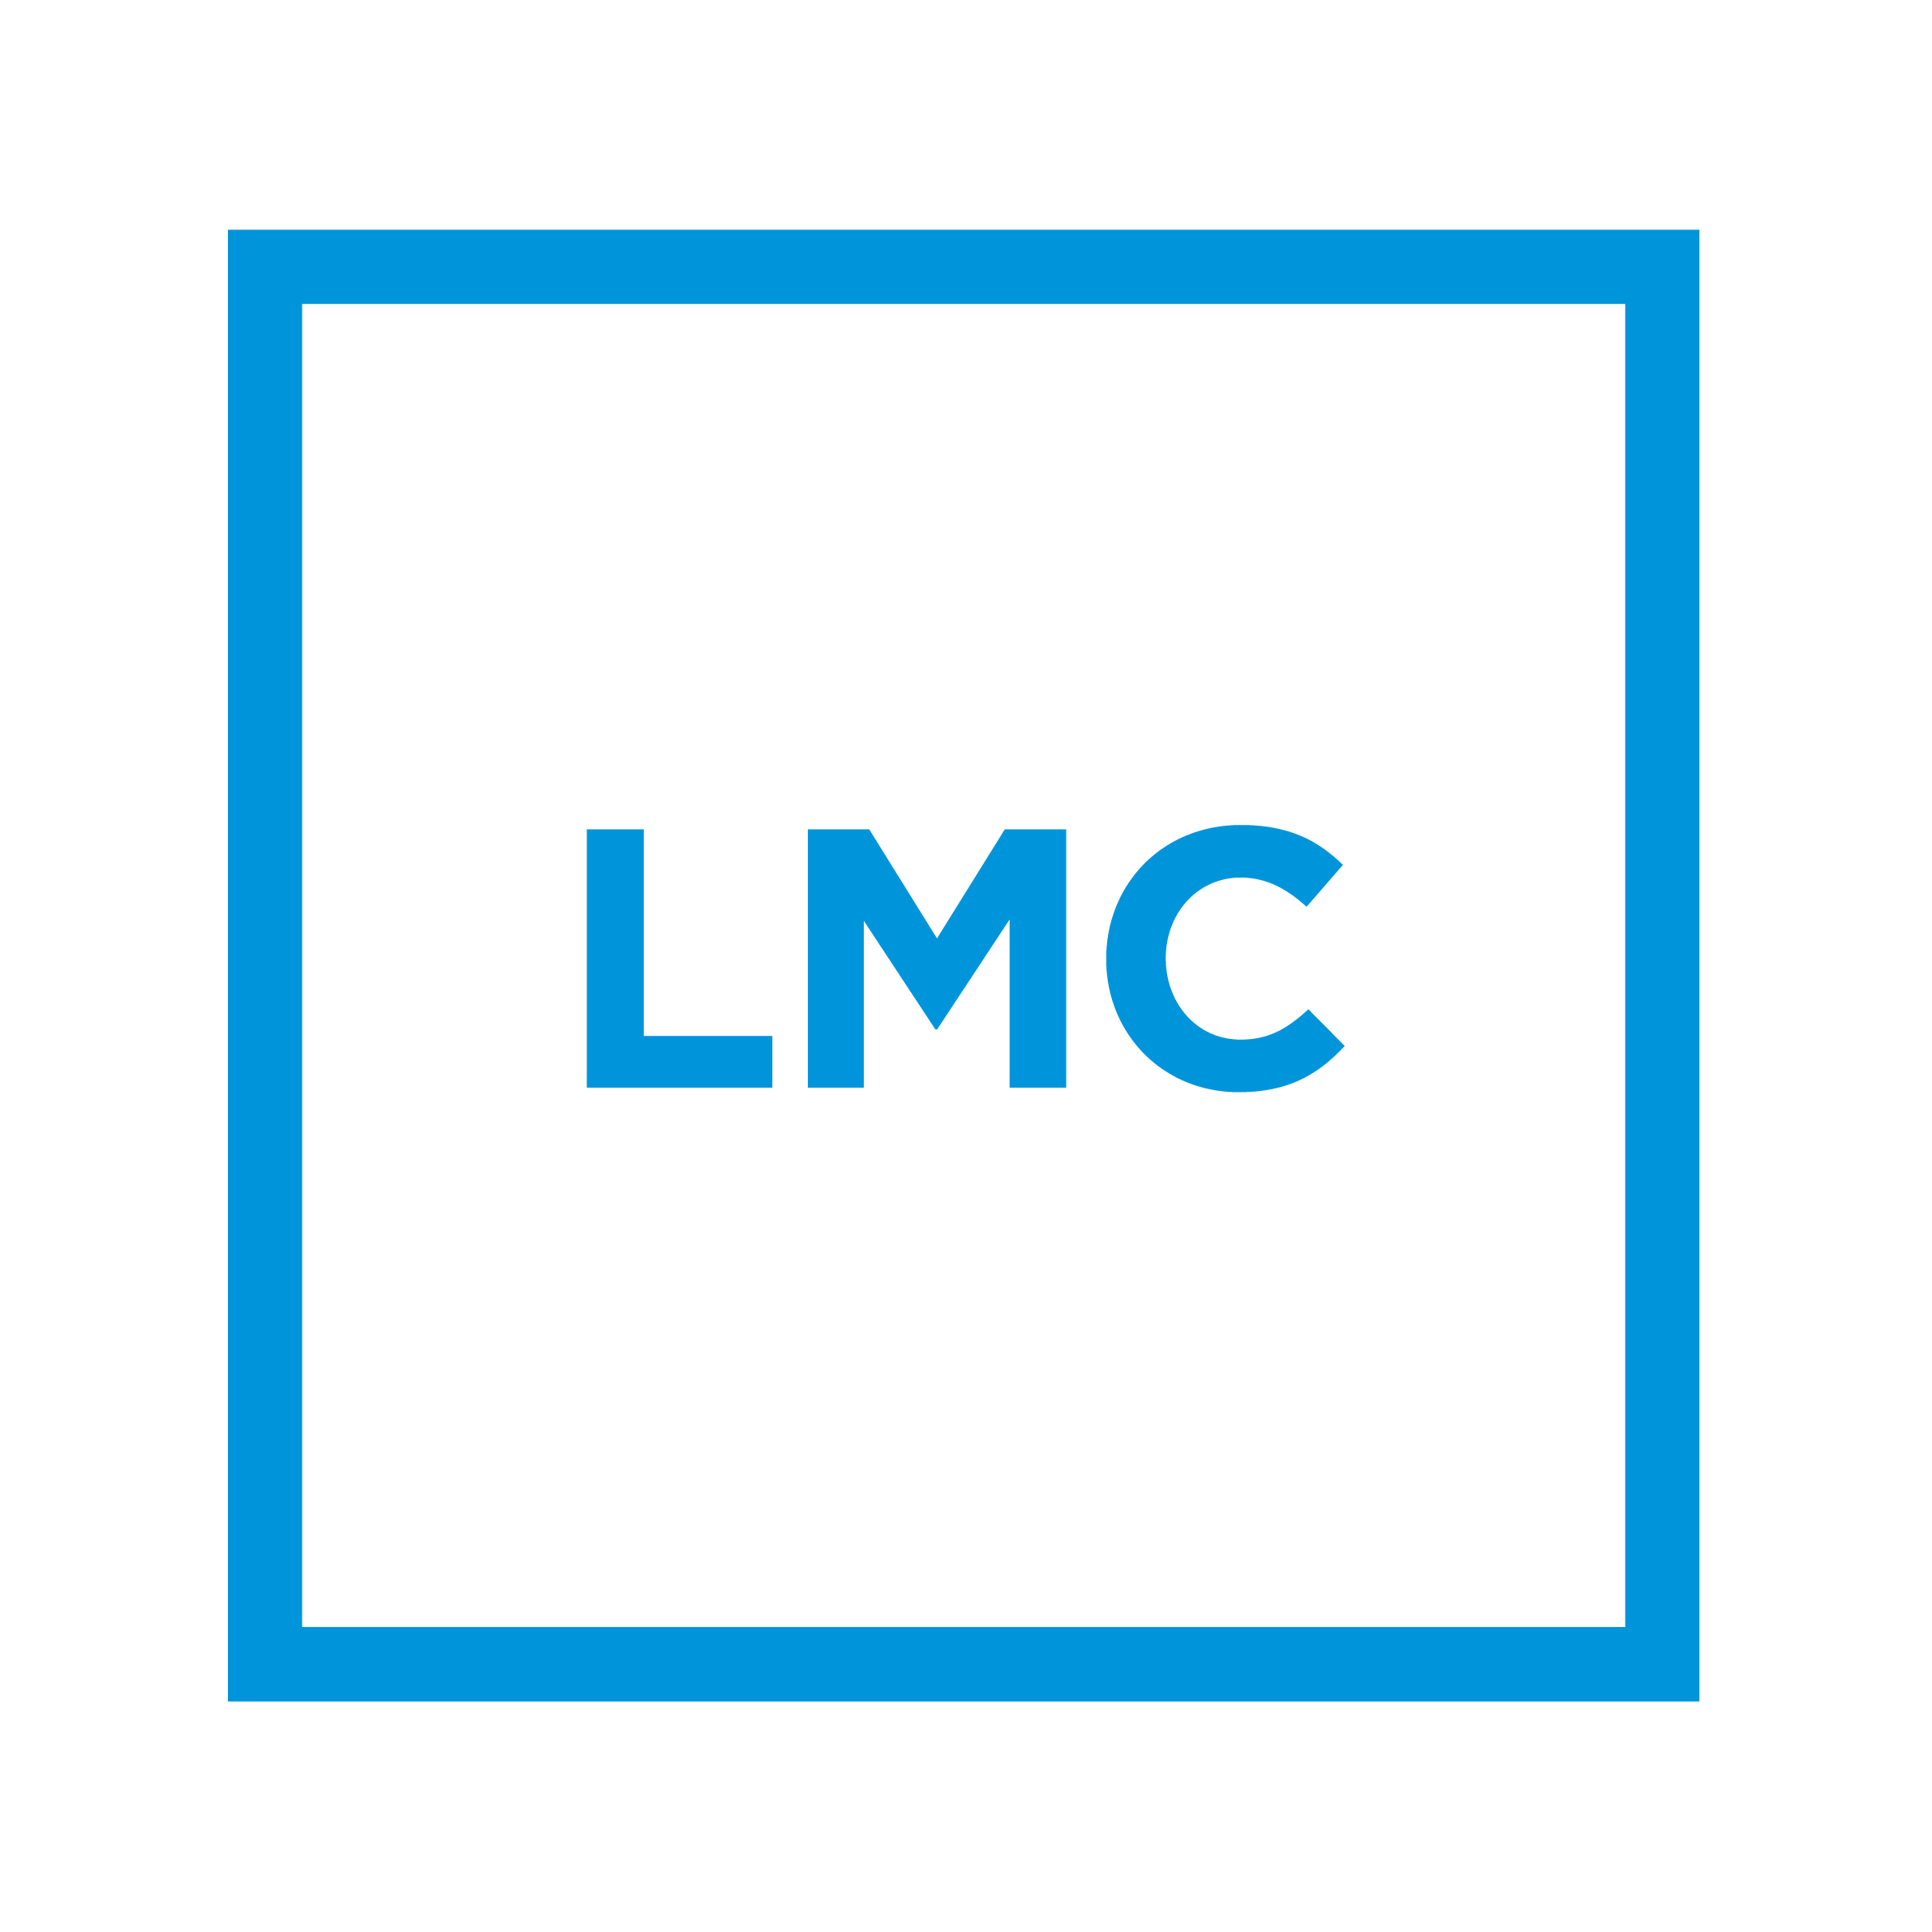 LMC Design